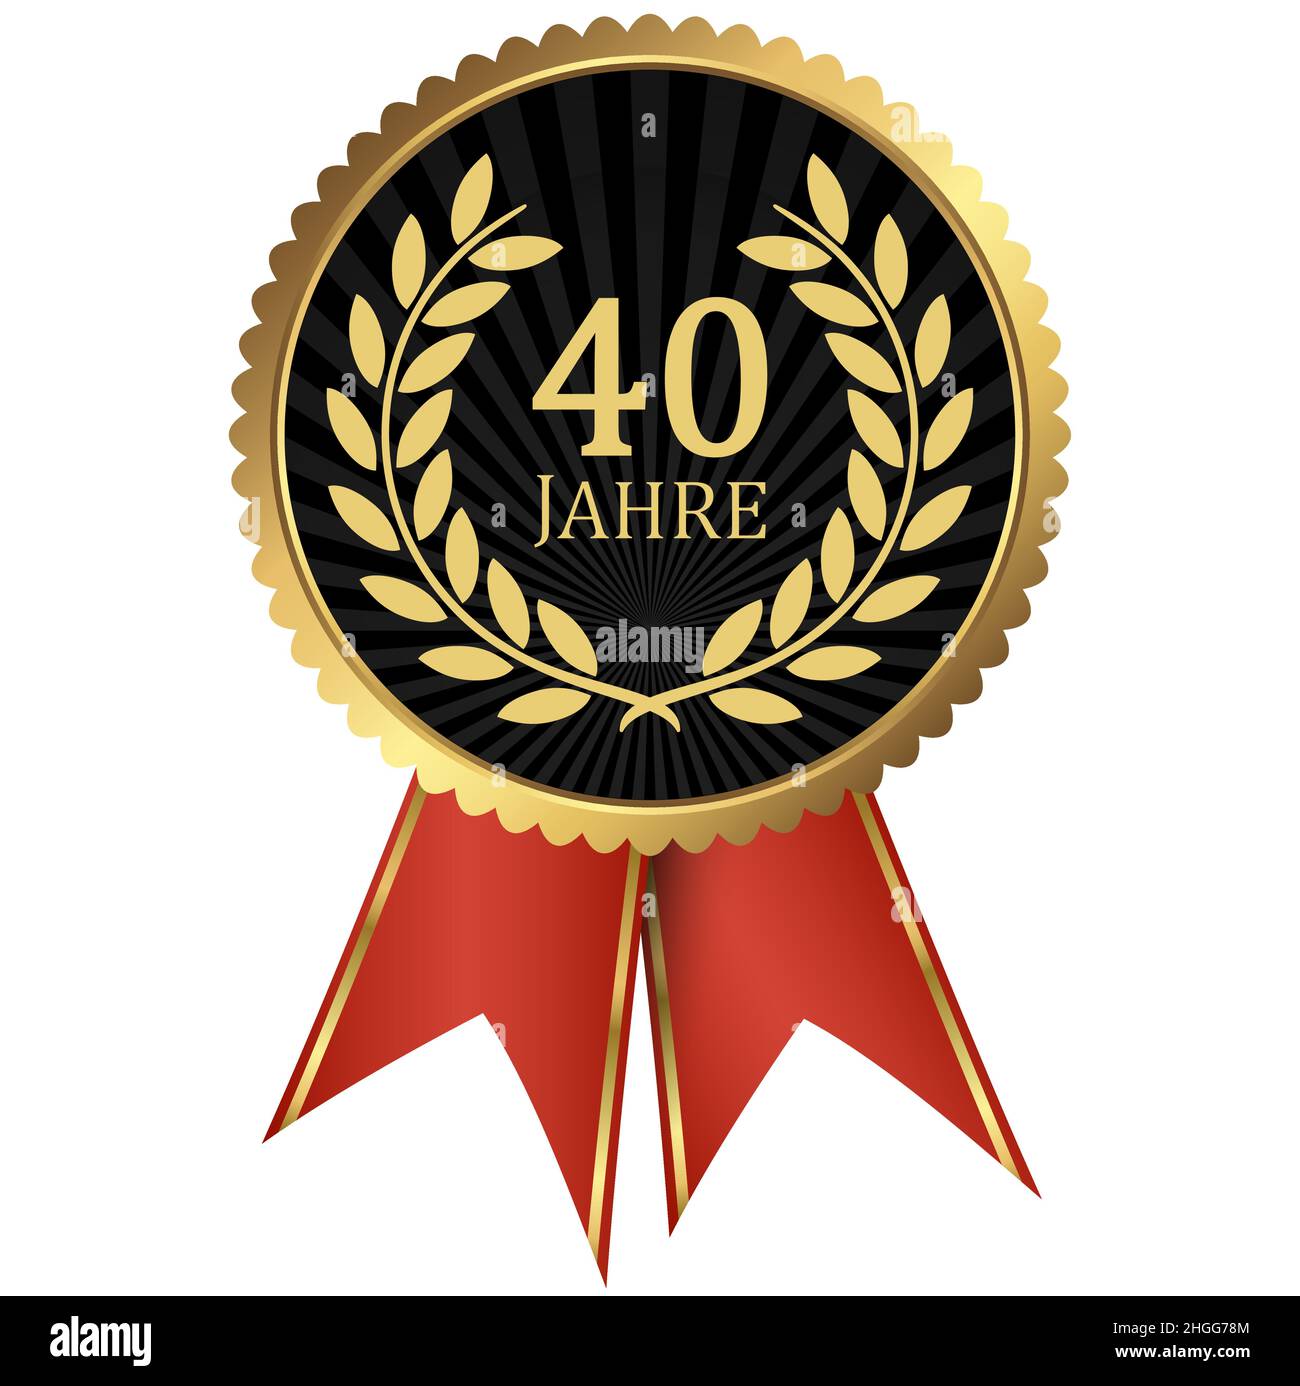 fichier vectoriel eps avec médaillon d'or avec couronne de laurier pour le succès ou jubilé ferme et texte 40 ans (texte allemand) Illustration de Vecteur